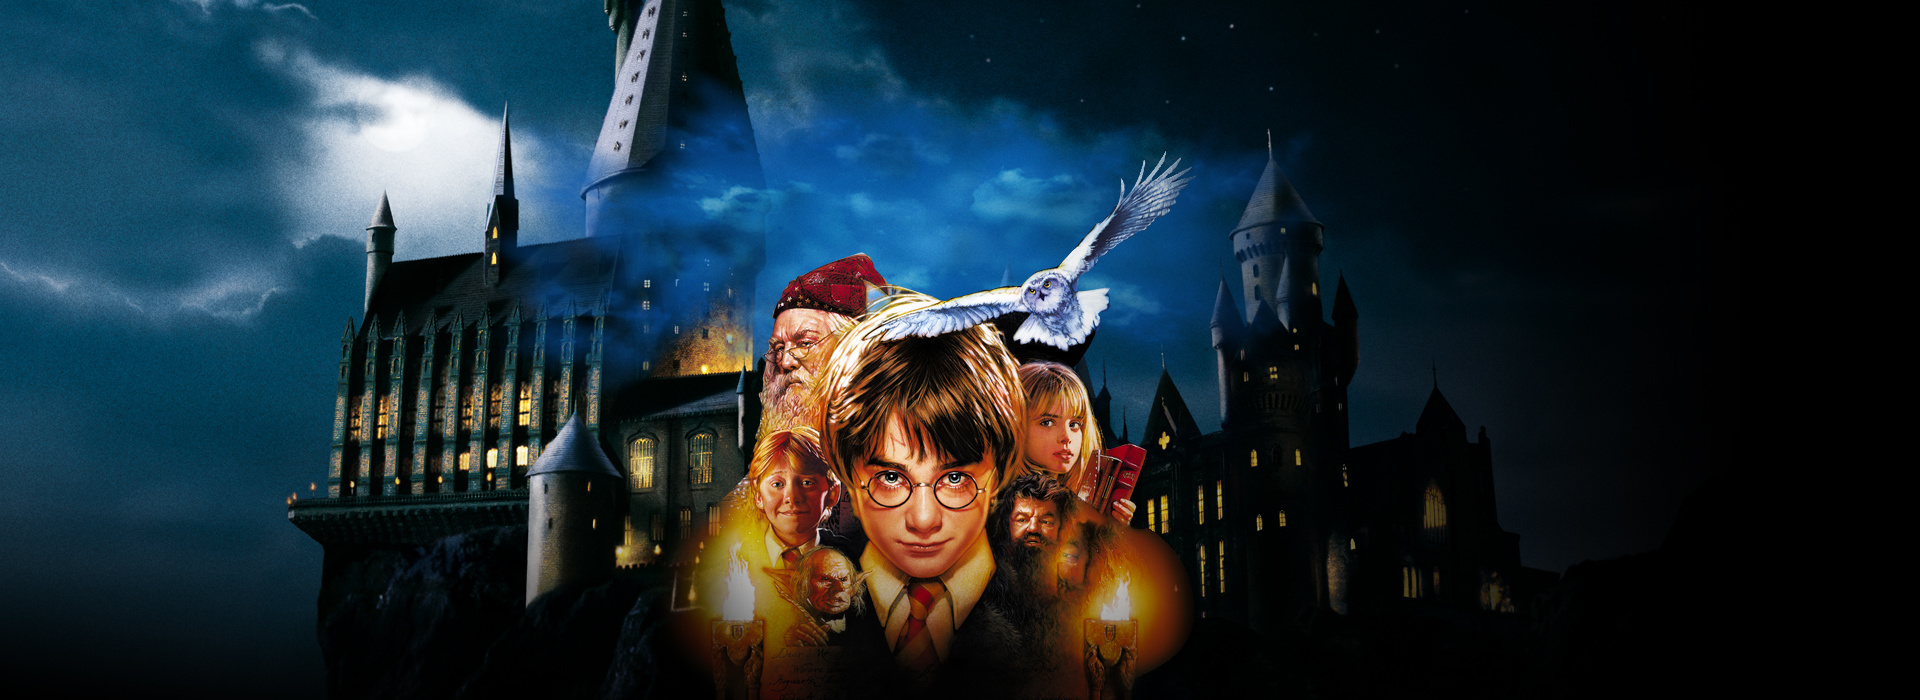 Постер фильма Гарри Поттер и философский камень